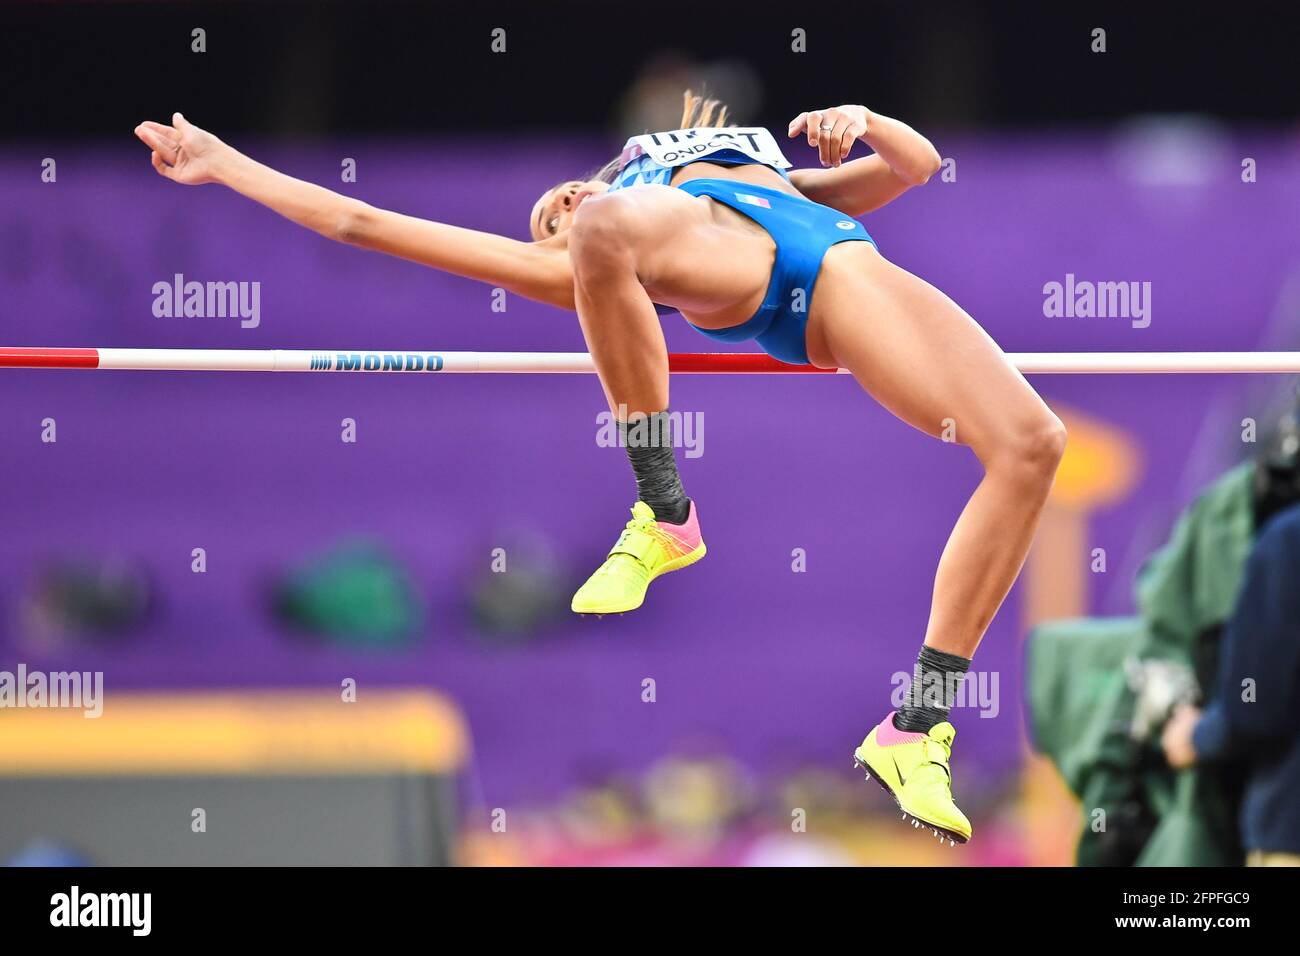 Alessia Trost (Italie). High Jump Women, qualification. Championnats du monde d'athlétisme de l'IAAF Londres 2017 Banque D'Images